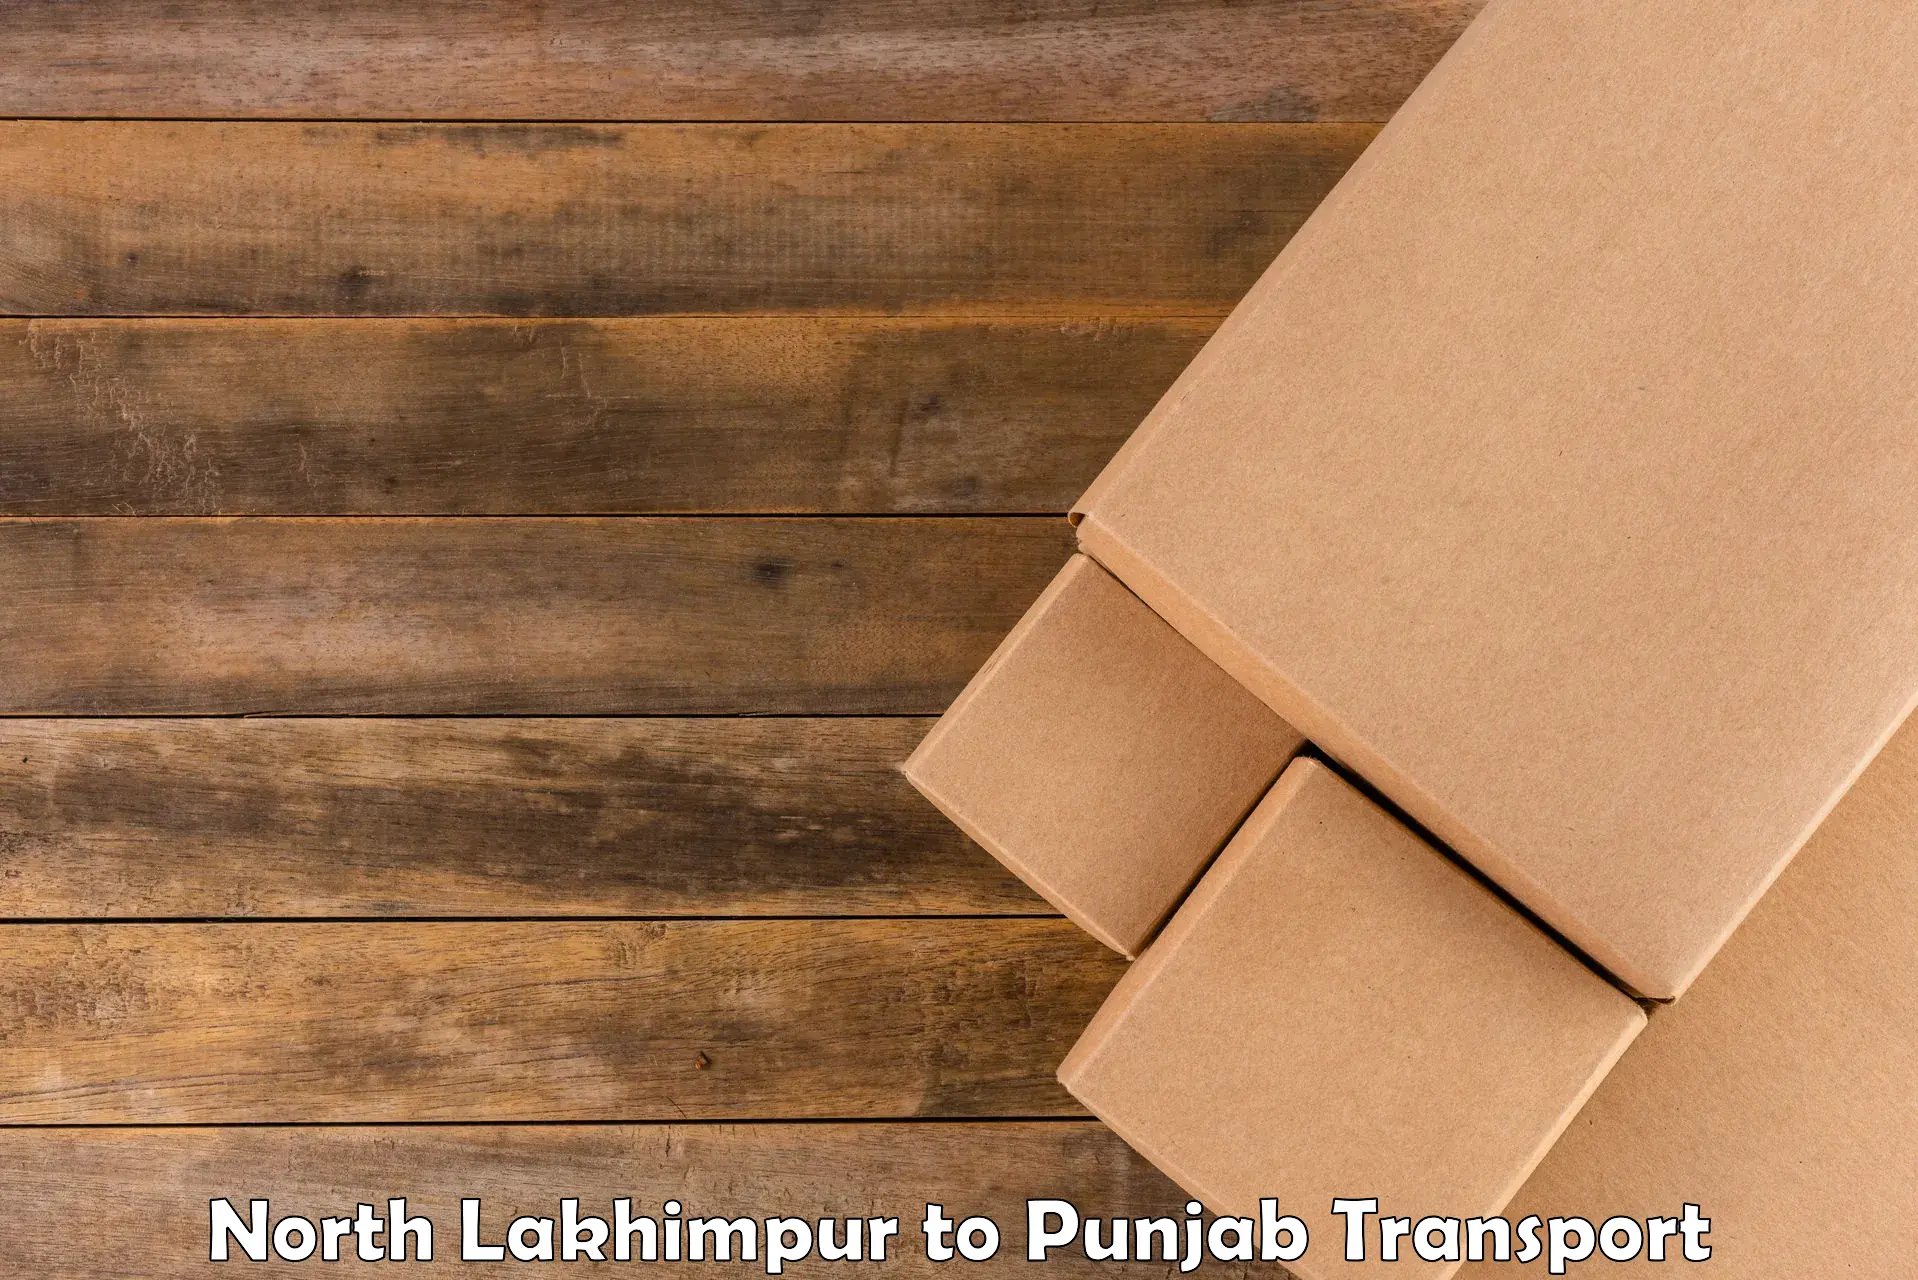 Transport in sharing North Lakhimpur to Punjab